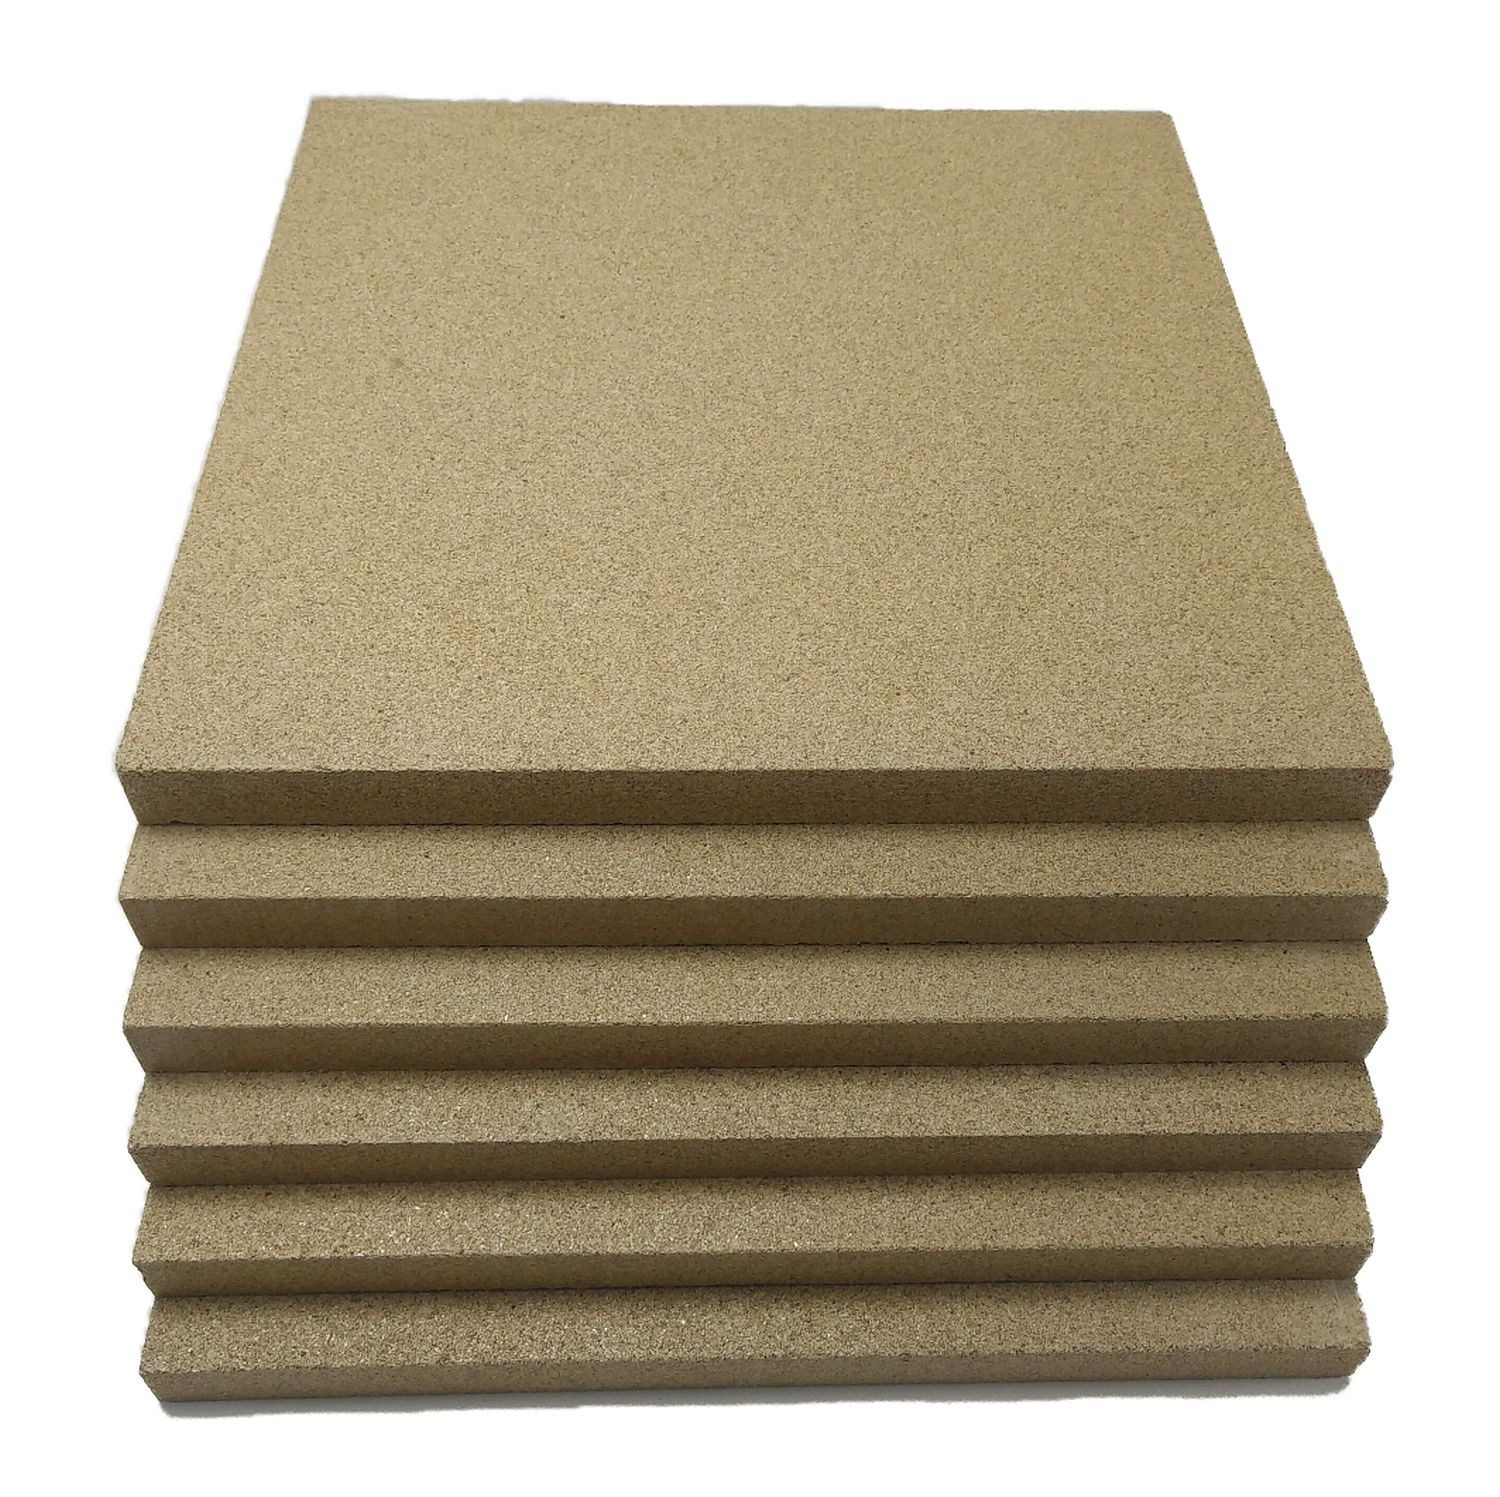 Vermiculite-Platten als Bodenisolierung für Holzbacköfen, Steinbacköfen und Pizzaöfen